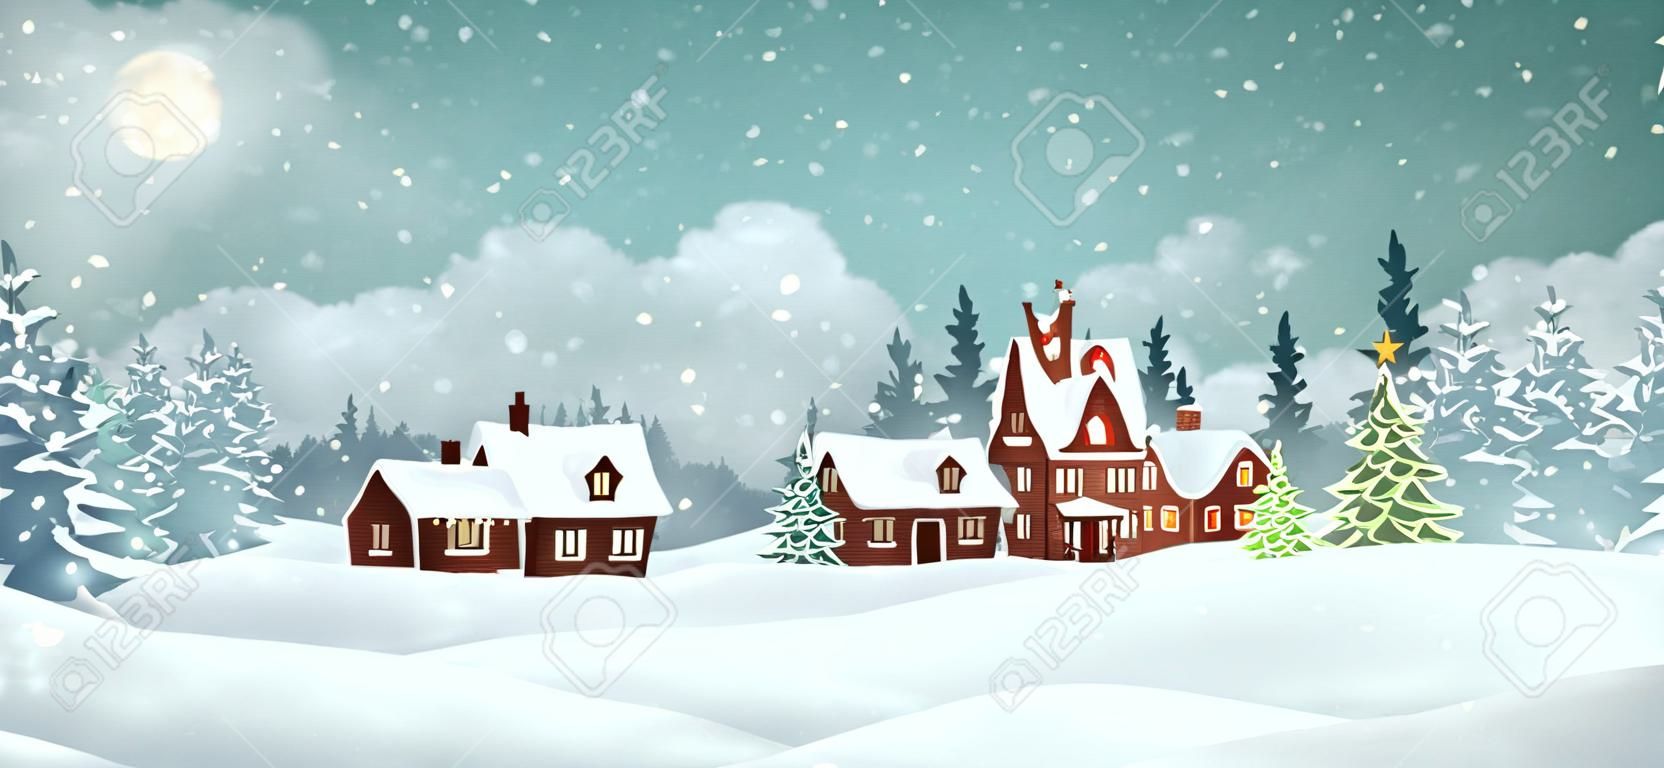 Case del villaggio di Natale con pineta invernale. Illustrazione vettoriale di vacanze di Natale